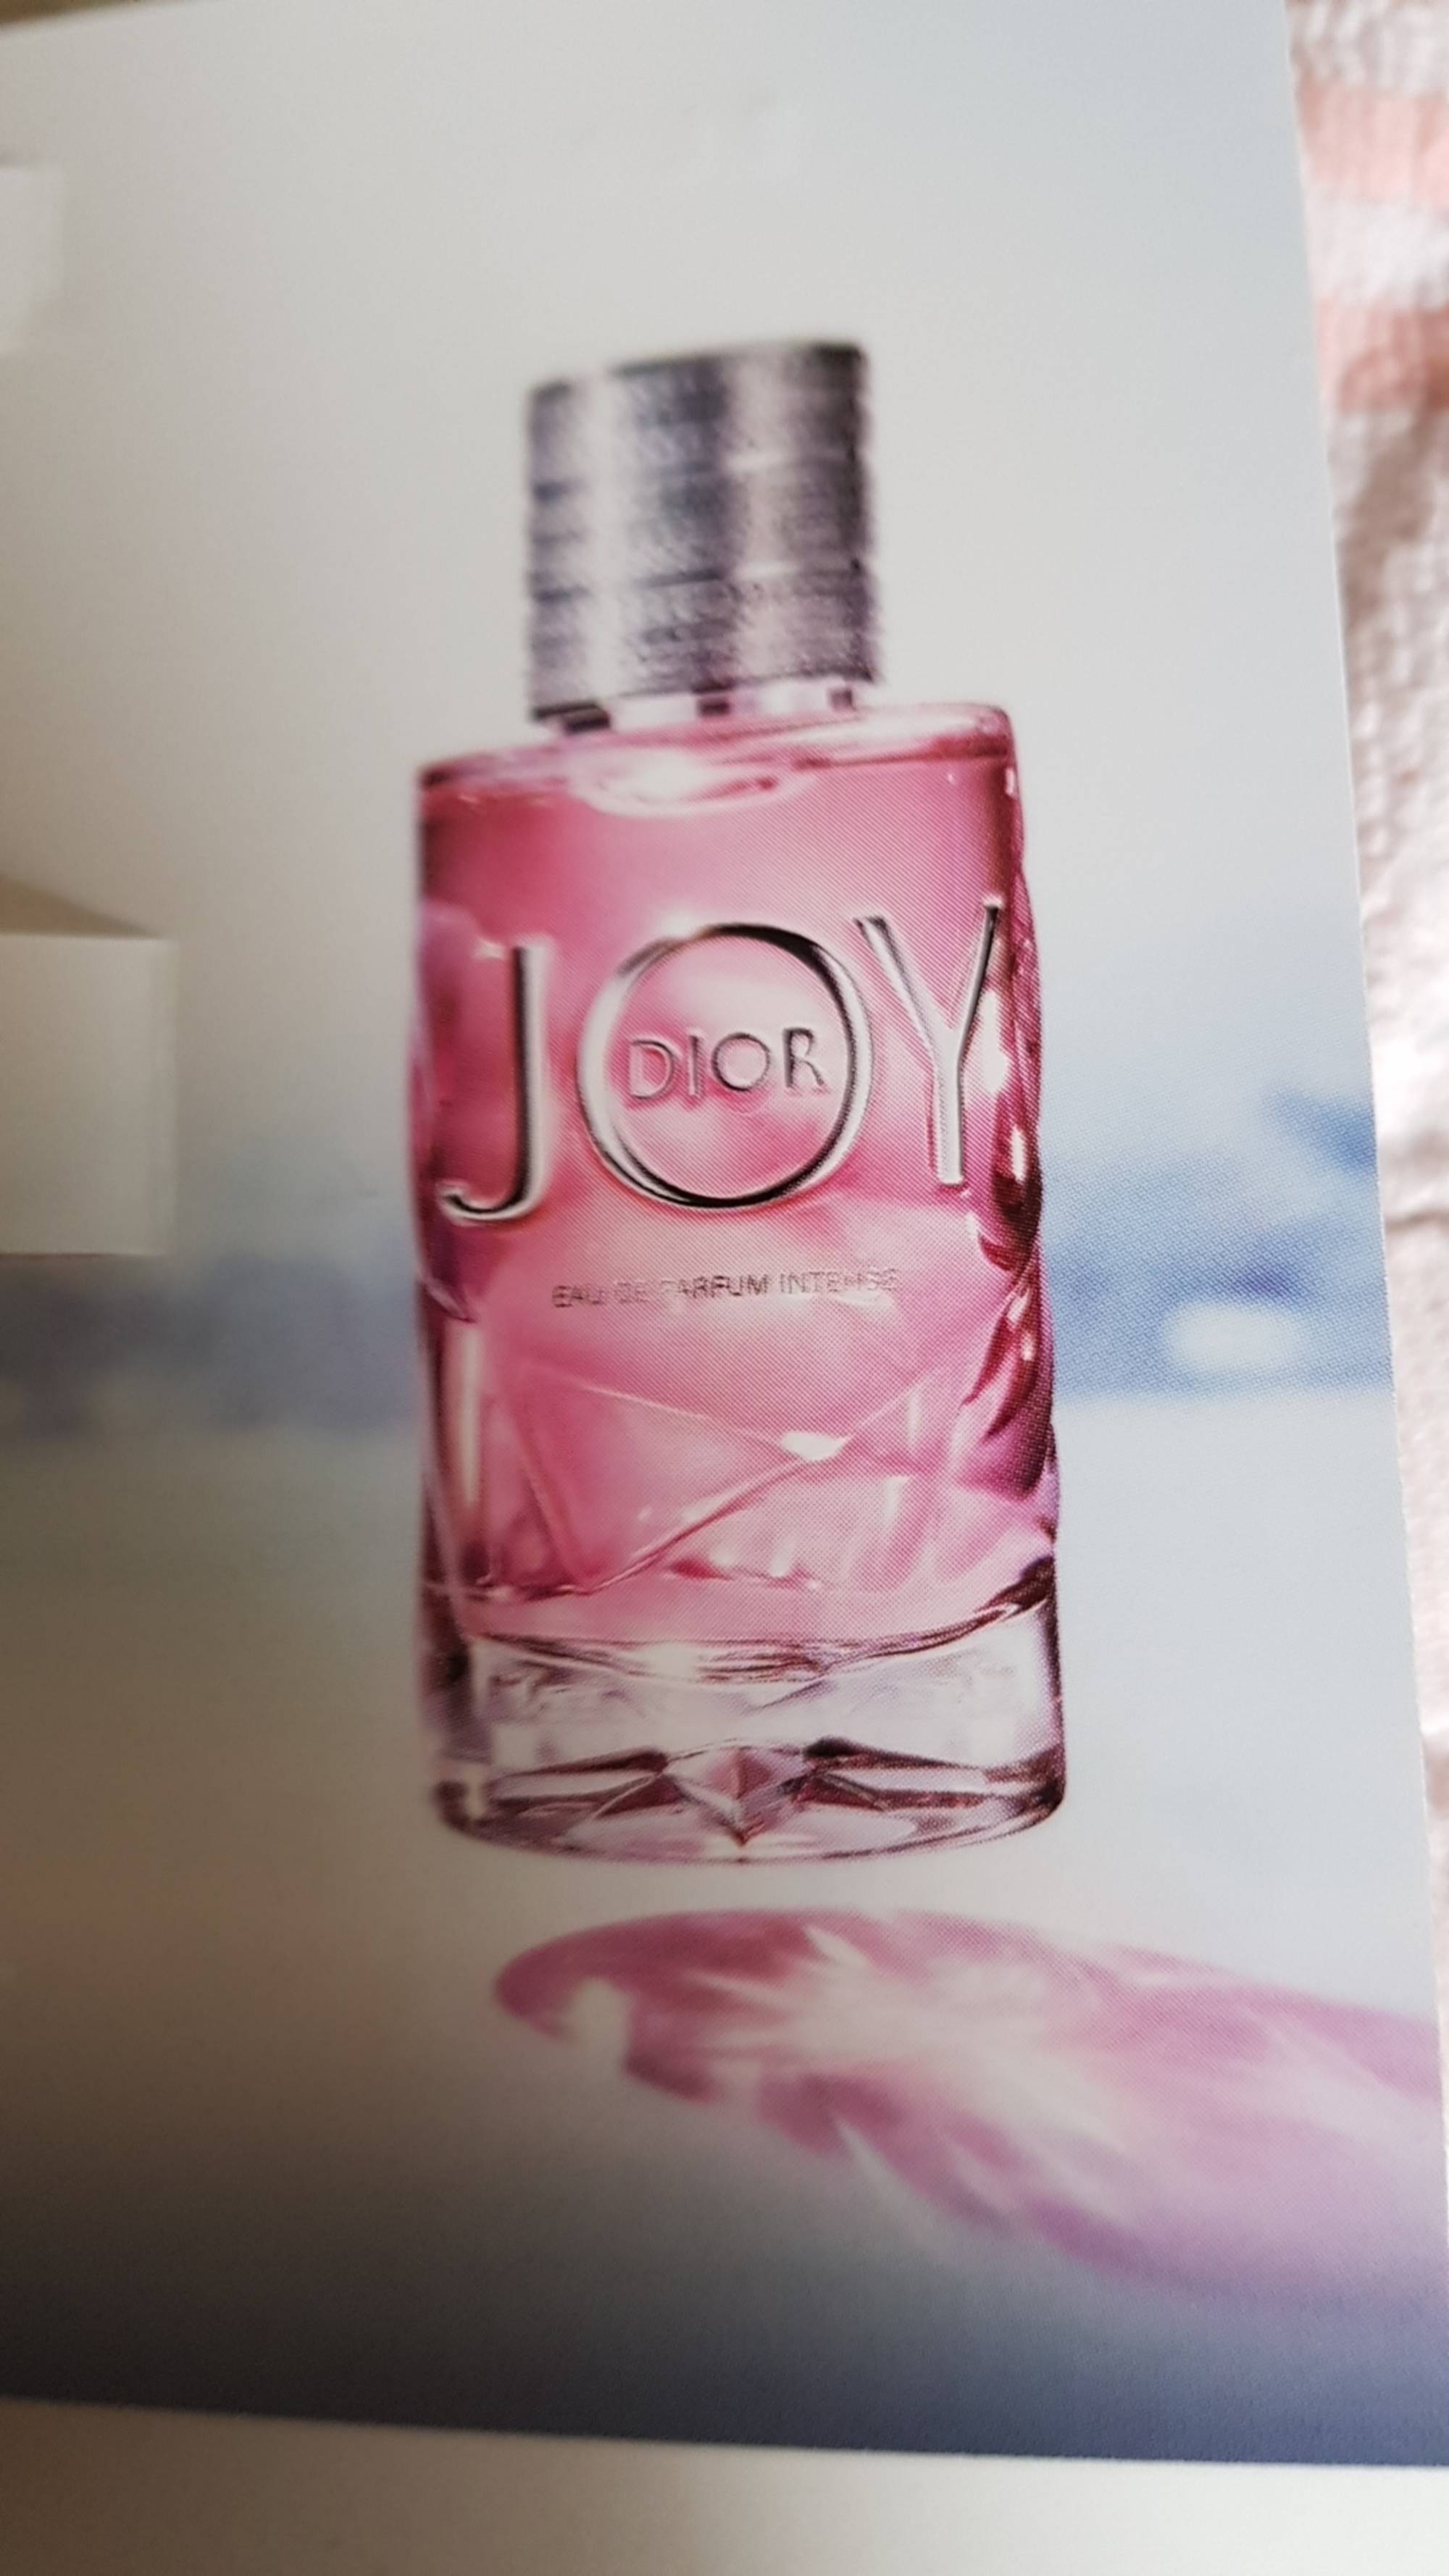 DIOR - Joy - Eau de parfum intense